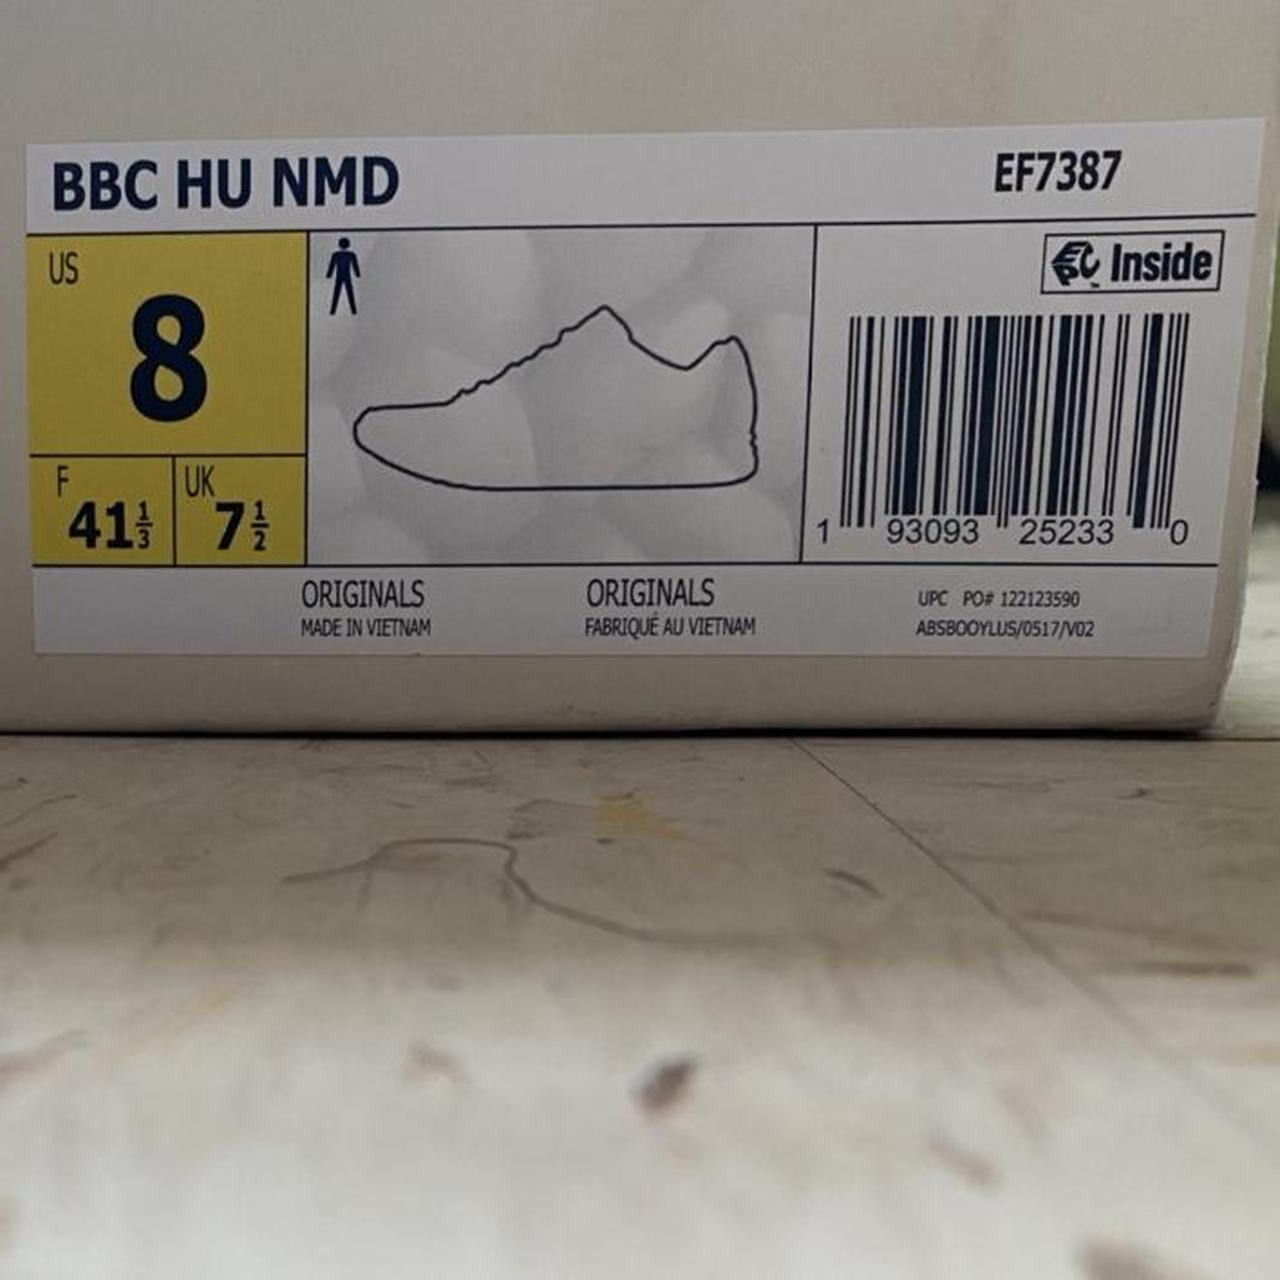 Adidas BBC Hu NMD - US 8